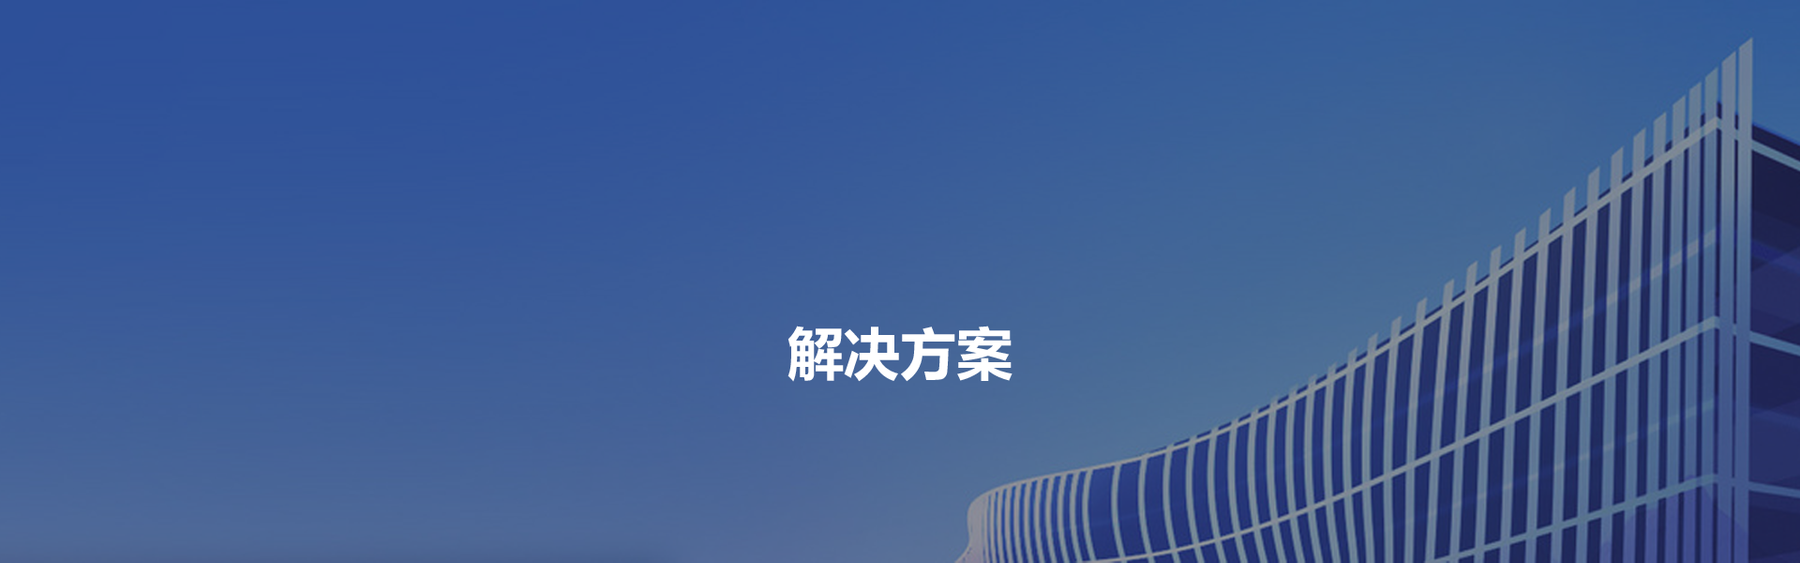 Z6尊龙·凯时(中国)-官方网站_项目1869